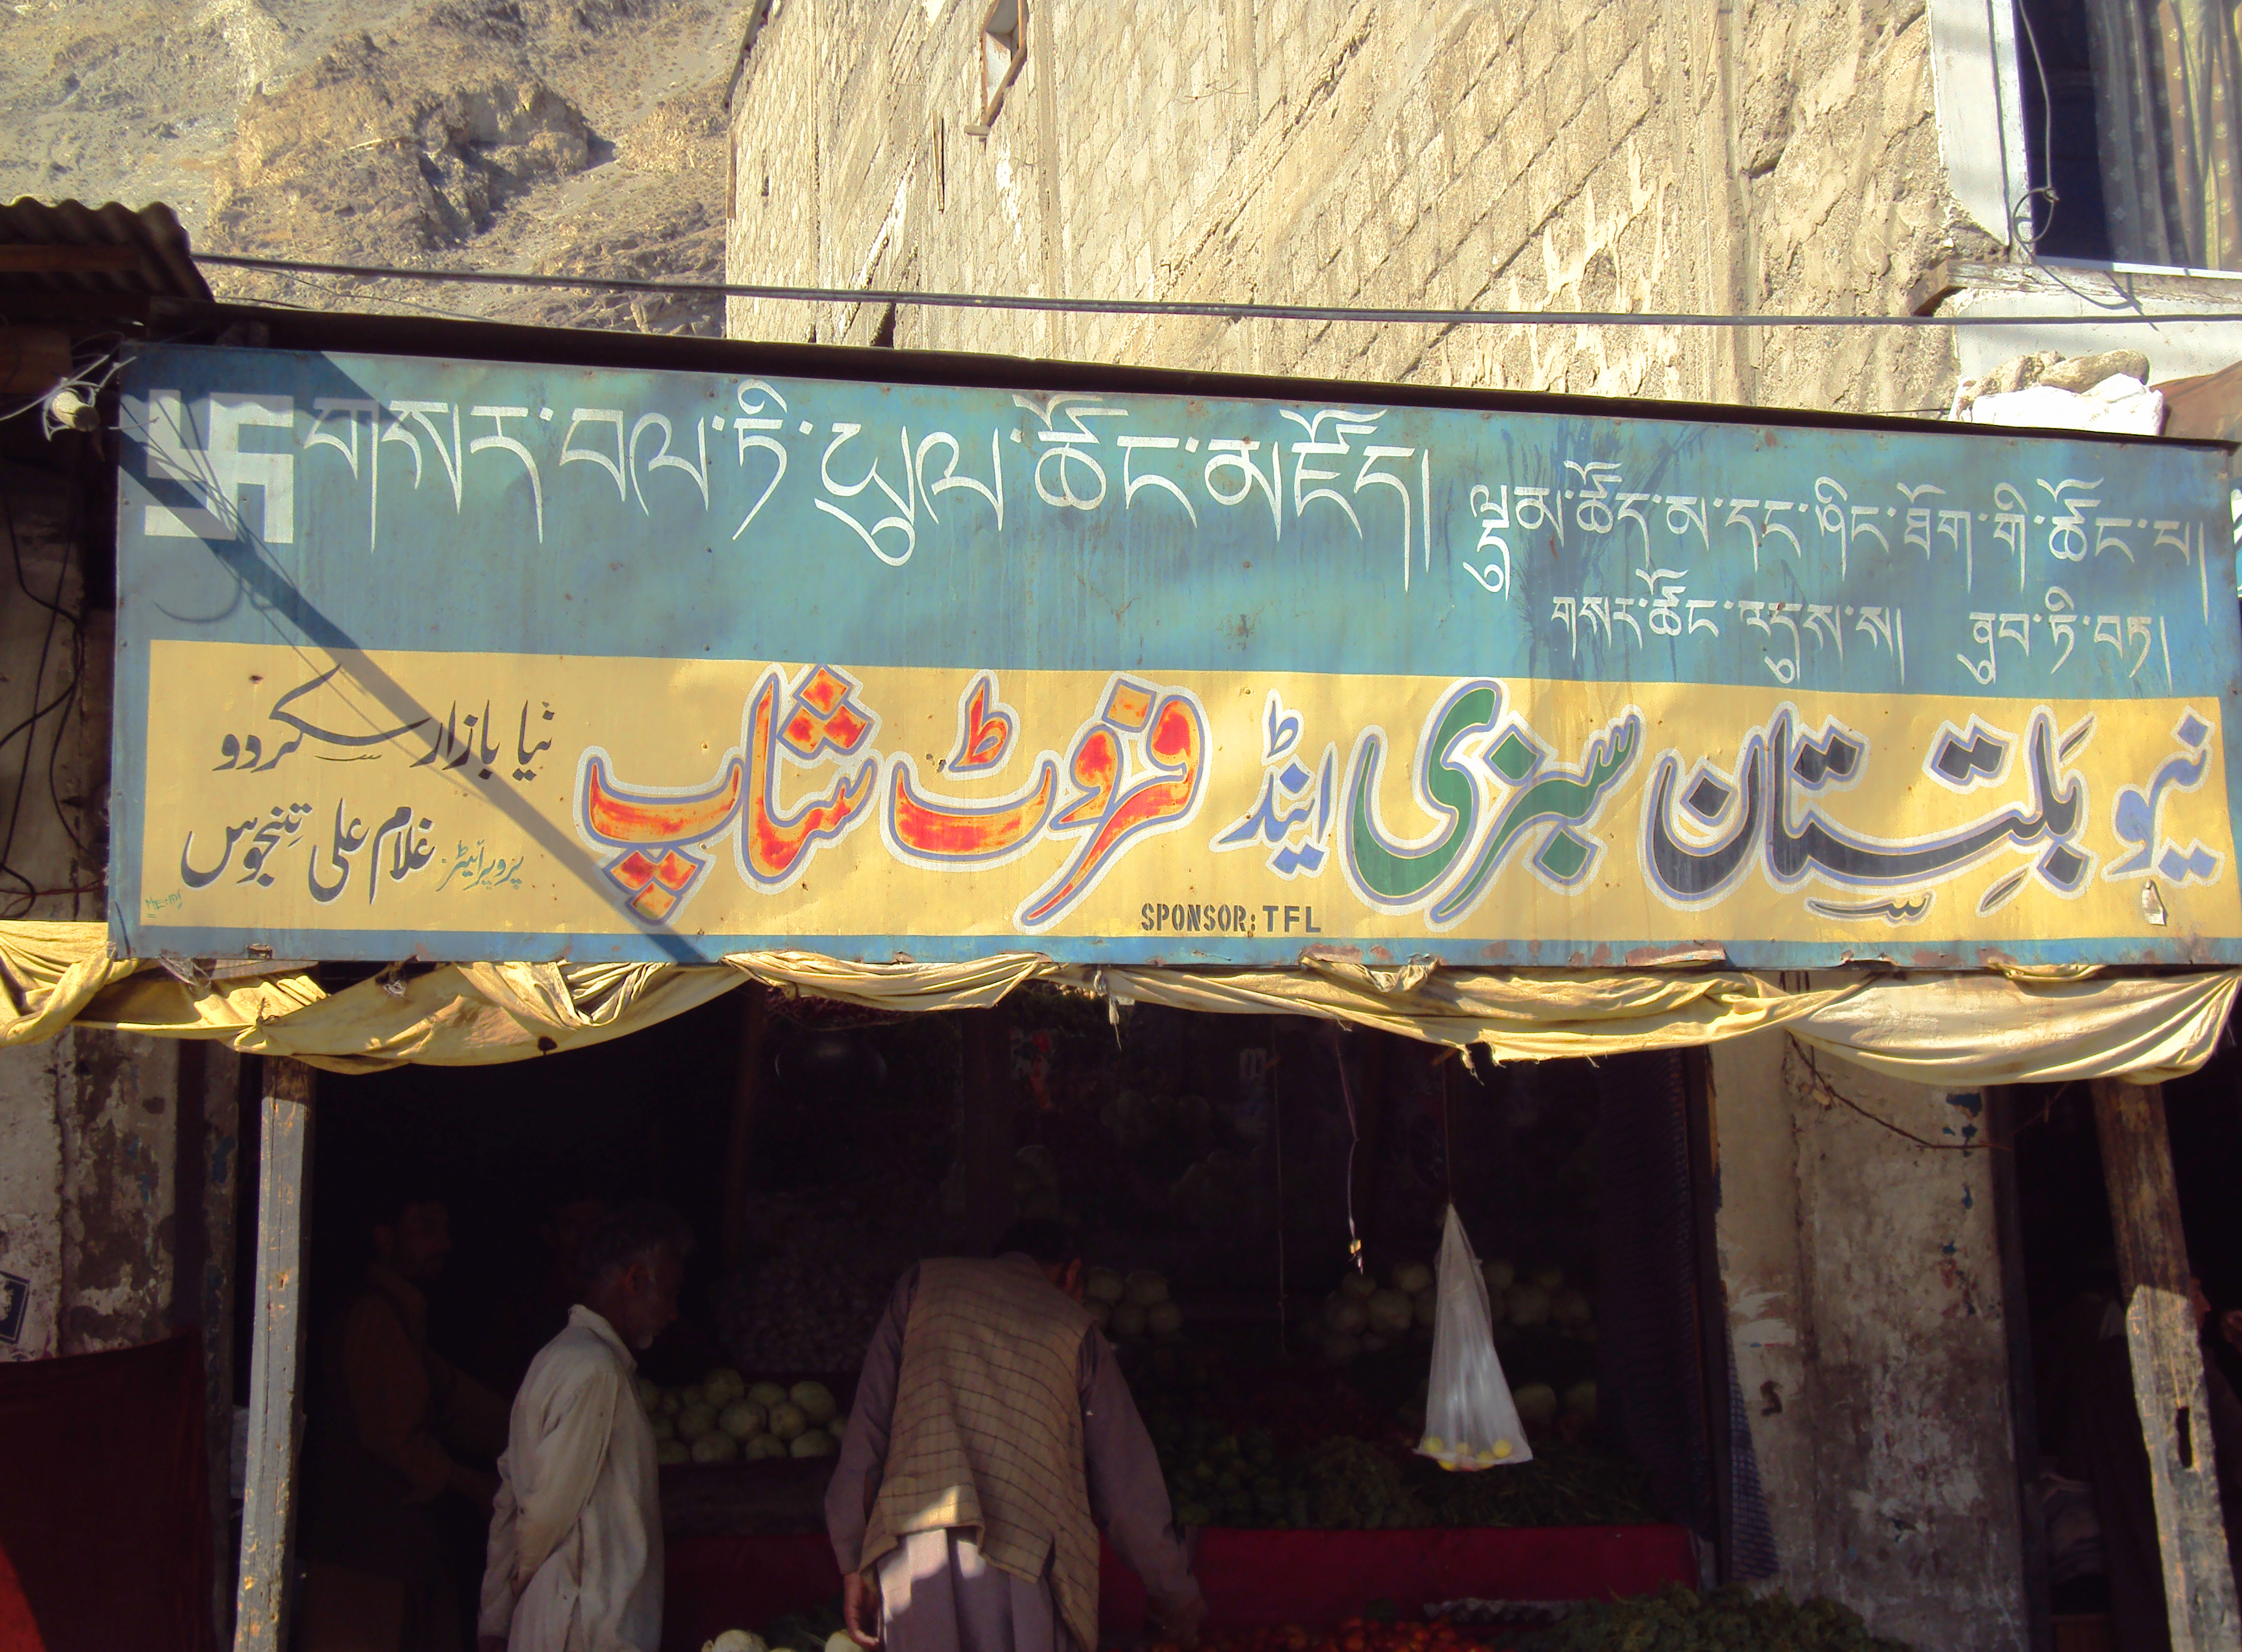 Shop sign in Tibetan and Urdu script